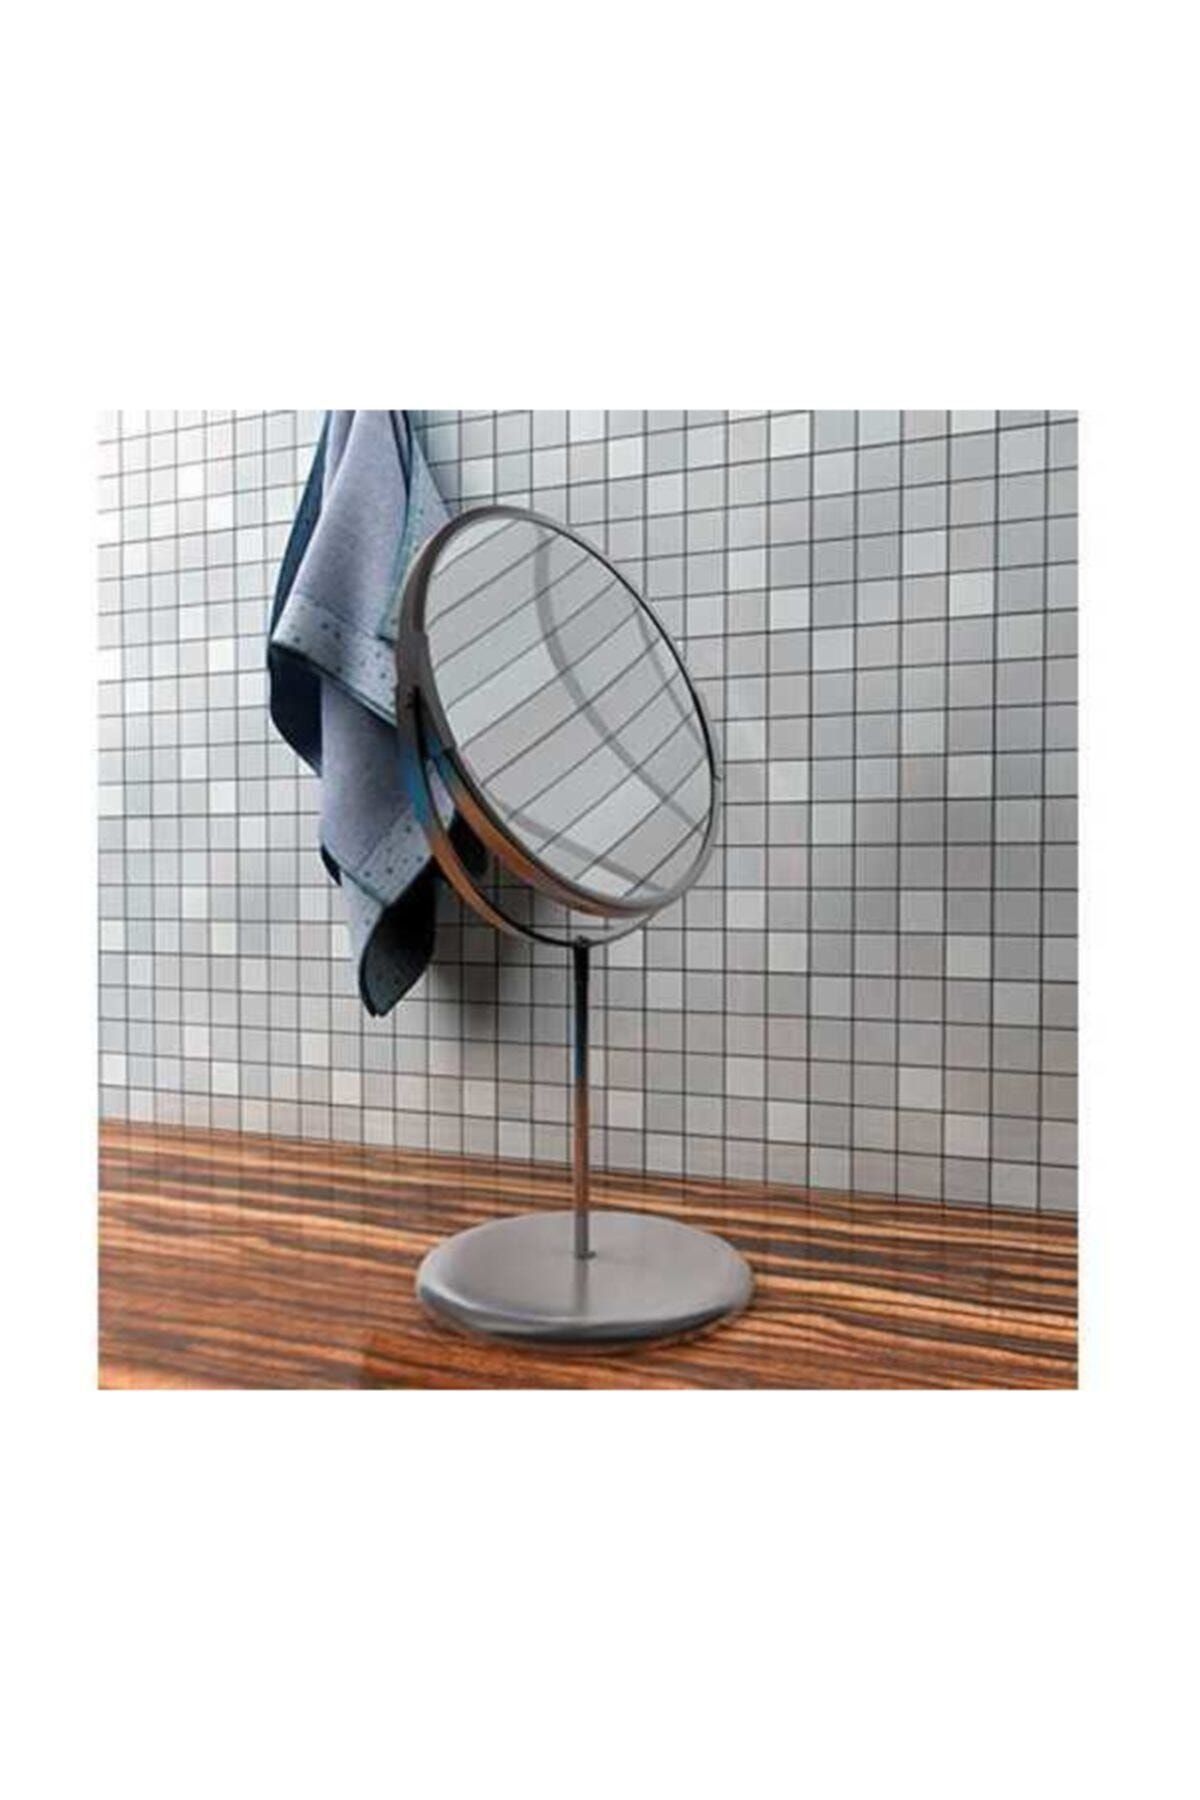 BARBUN Trensum Büyüteçli Çift Taraflı Ayna Makyaj Traş Tıraş Aynası